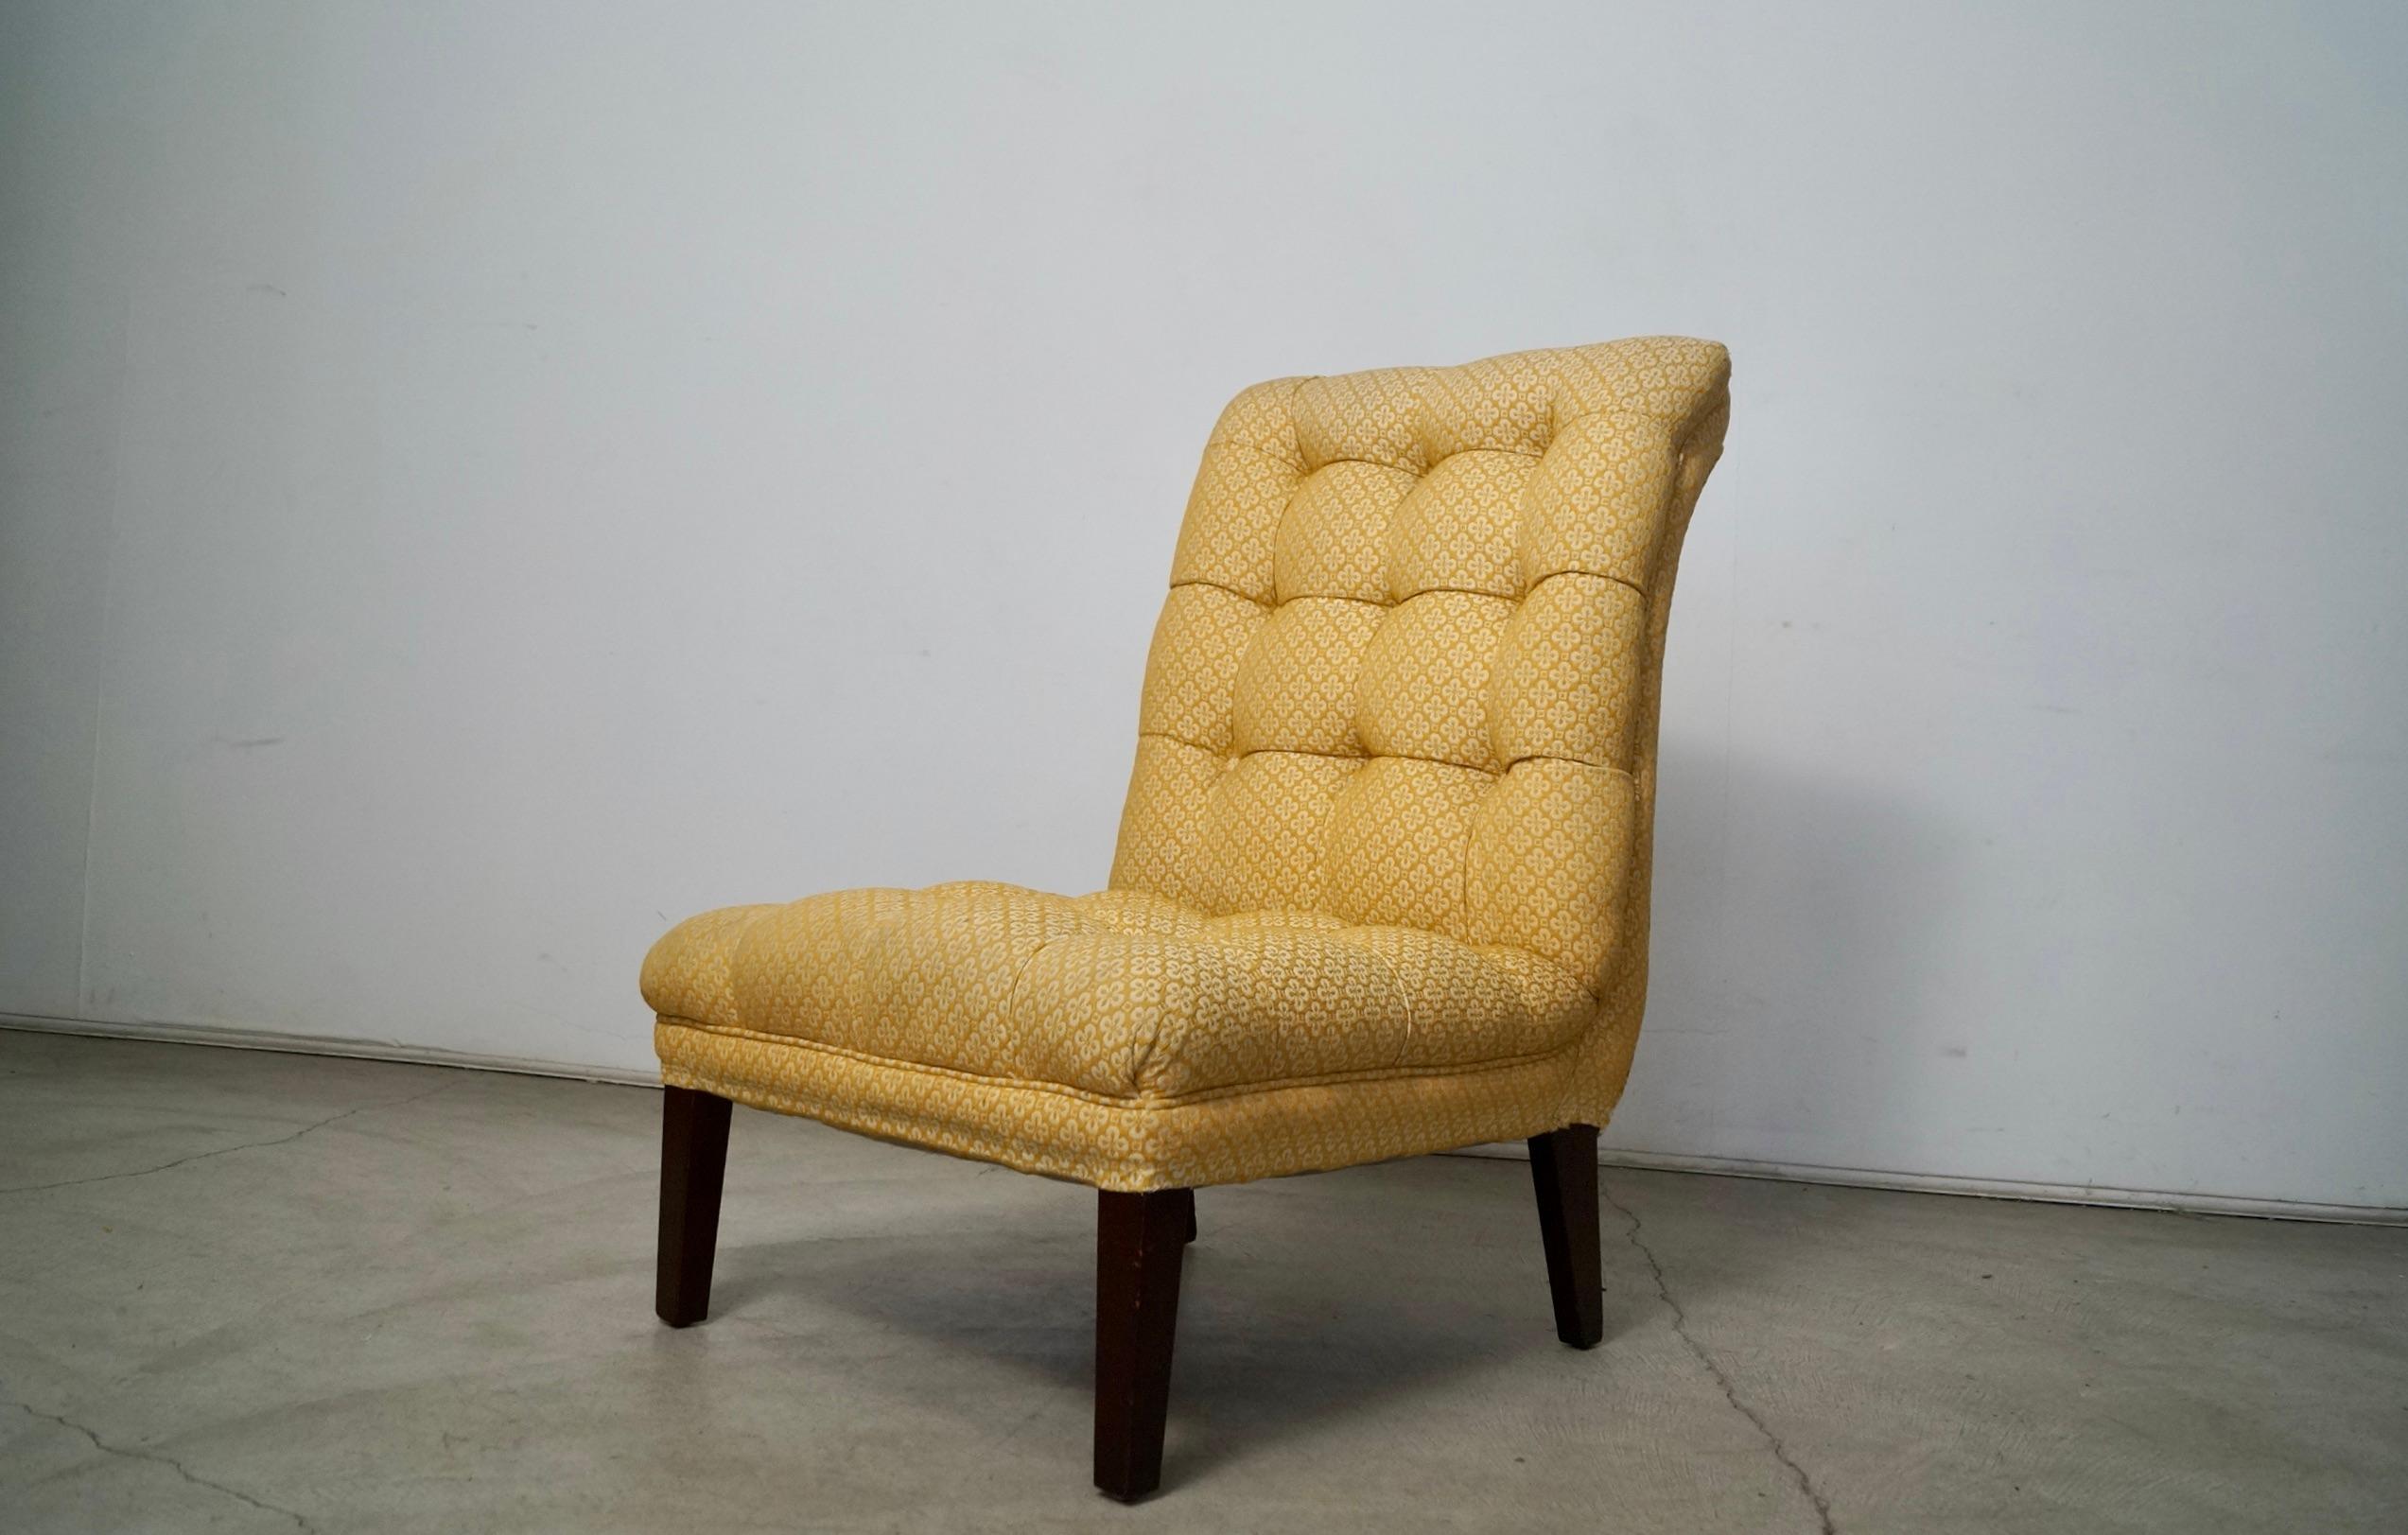 Vintage 1960's Hollywood Regency getufteter Pantoffelstuhl zu verkaufen. Ein wirklich solider Stuhl mit einem tollen, geschwungenen Scoop-Design und abgewinkelten, konischen Beinen in Walnussoptik. Die Polsterung ist in hervorragendem Zustand, ohne